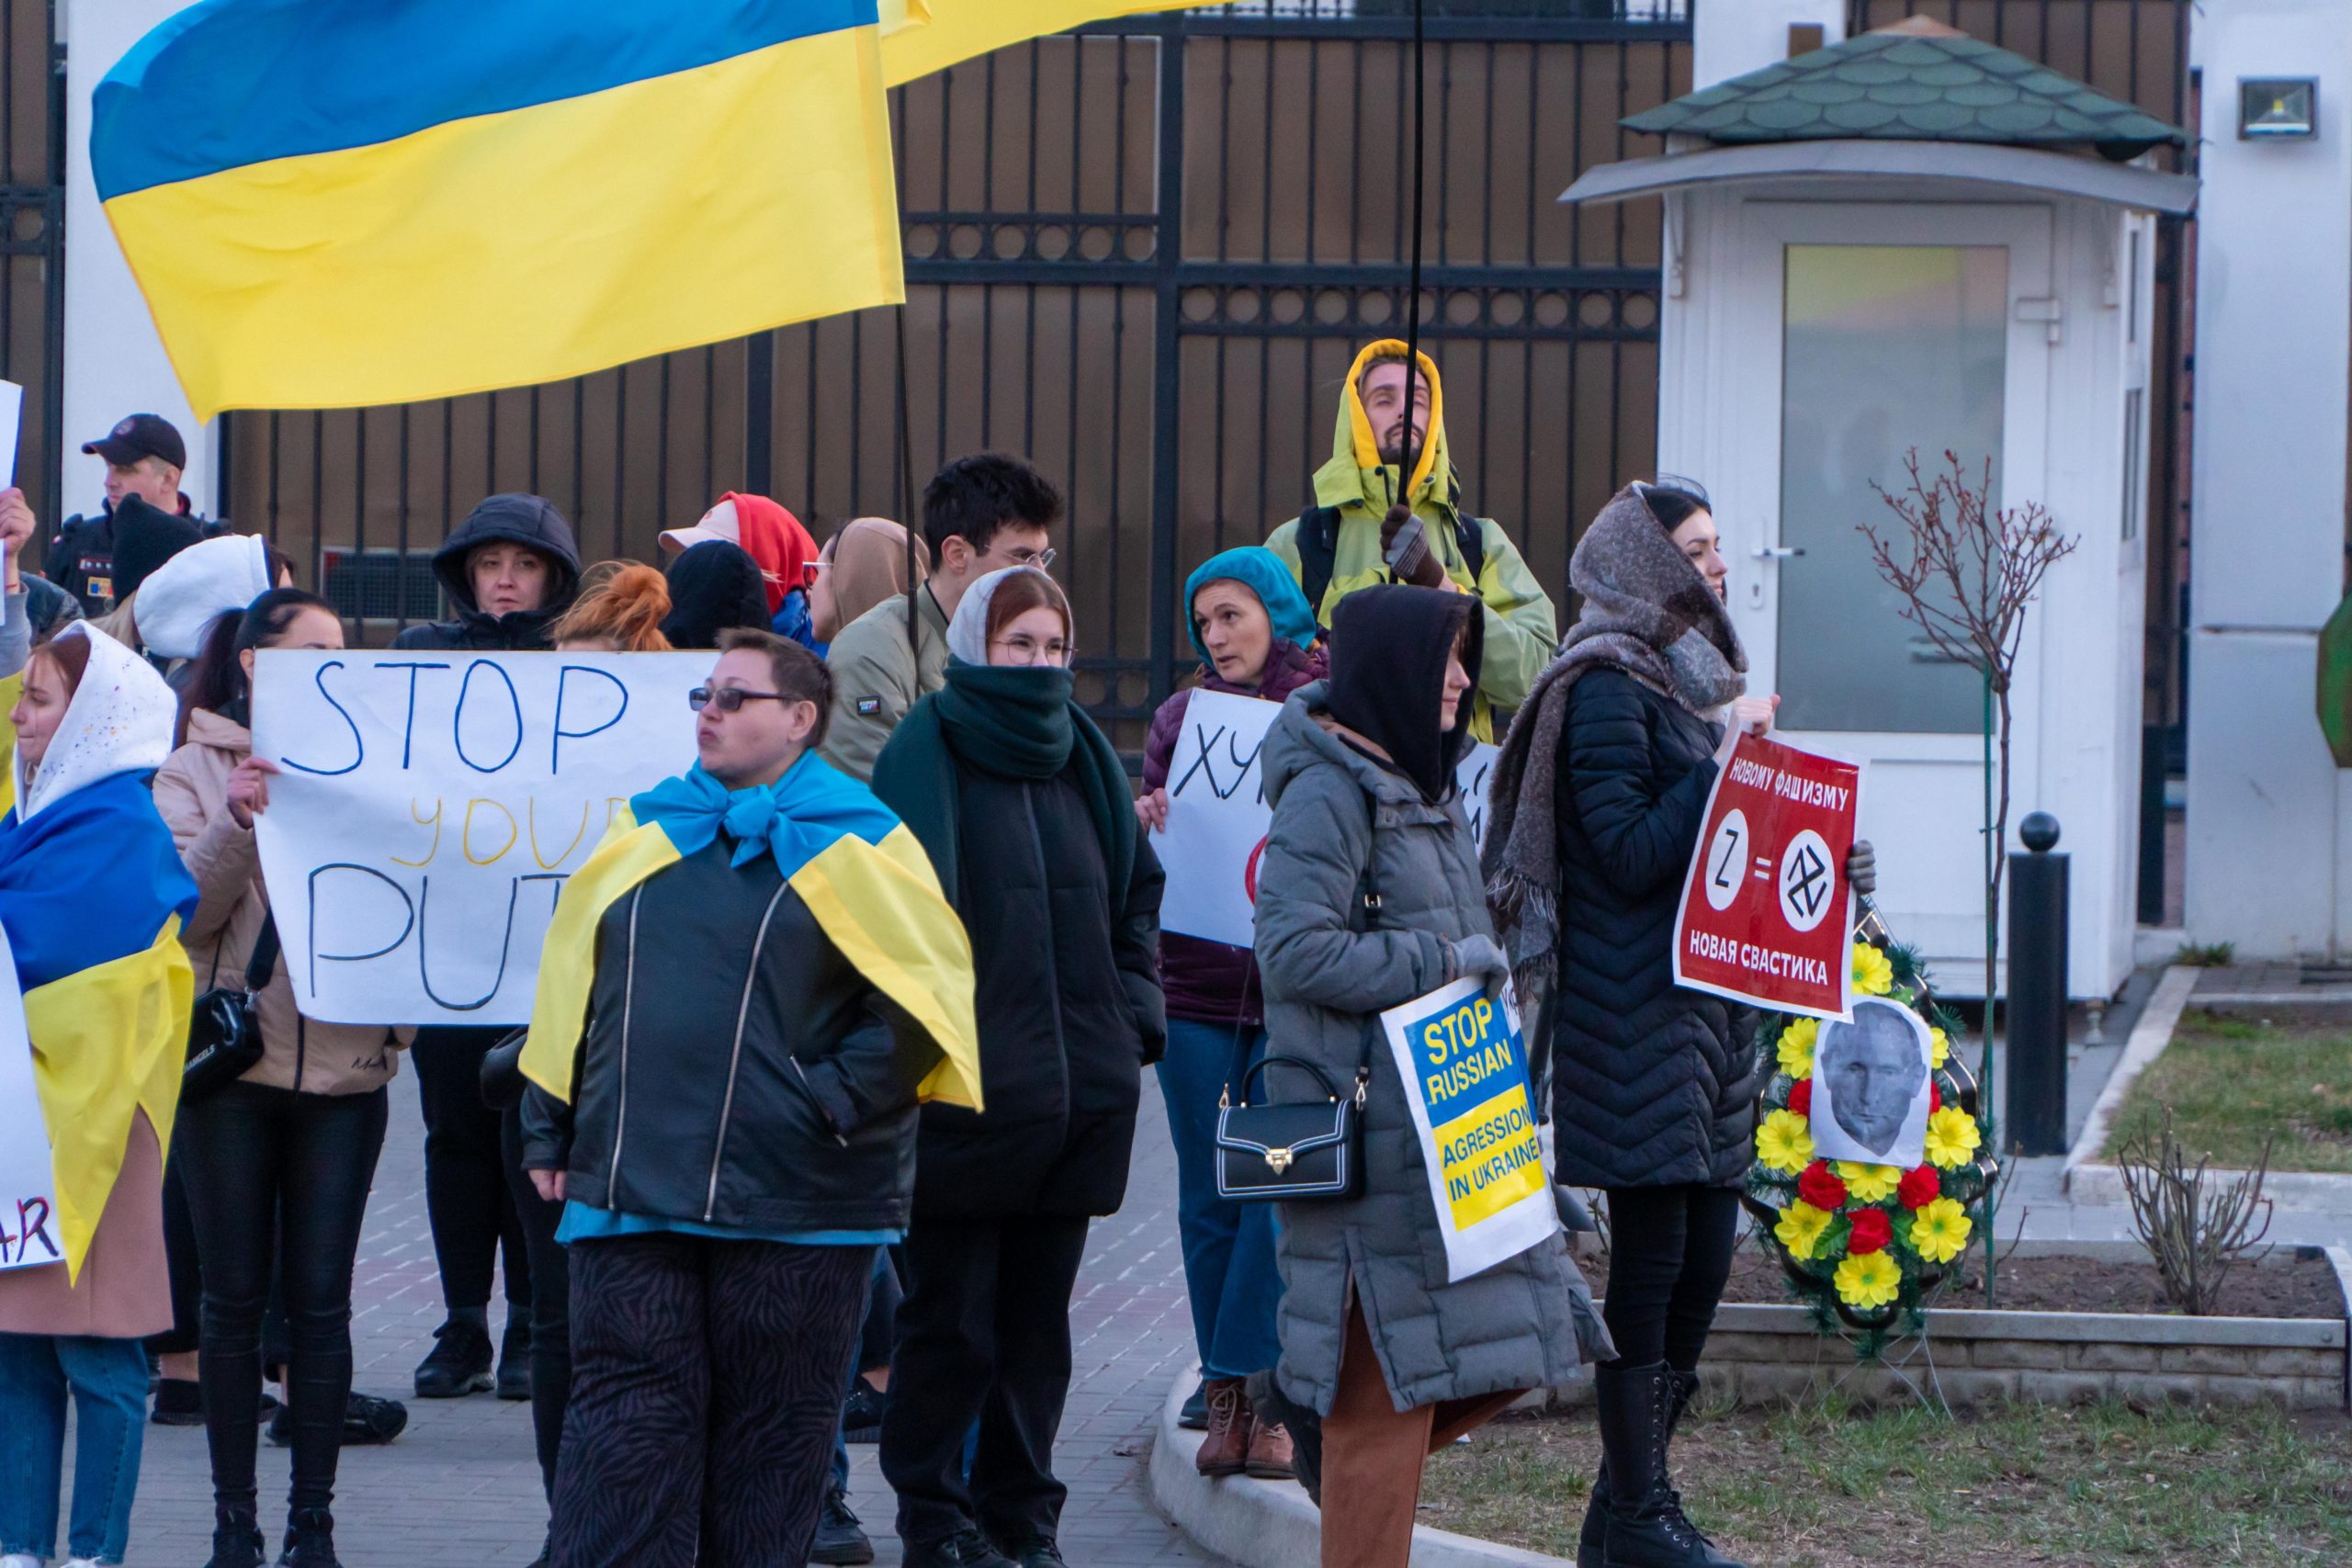 (ФОТО) В Кишиневе у здания посольства России прошел протест. Участники повесили чучело Путина